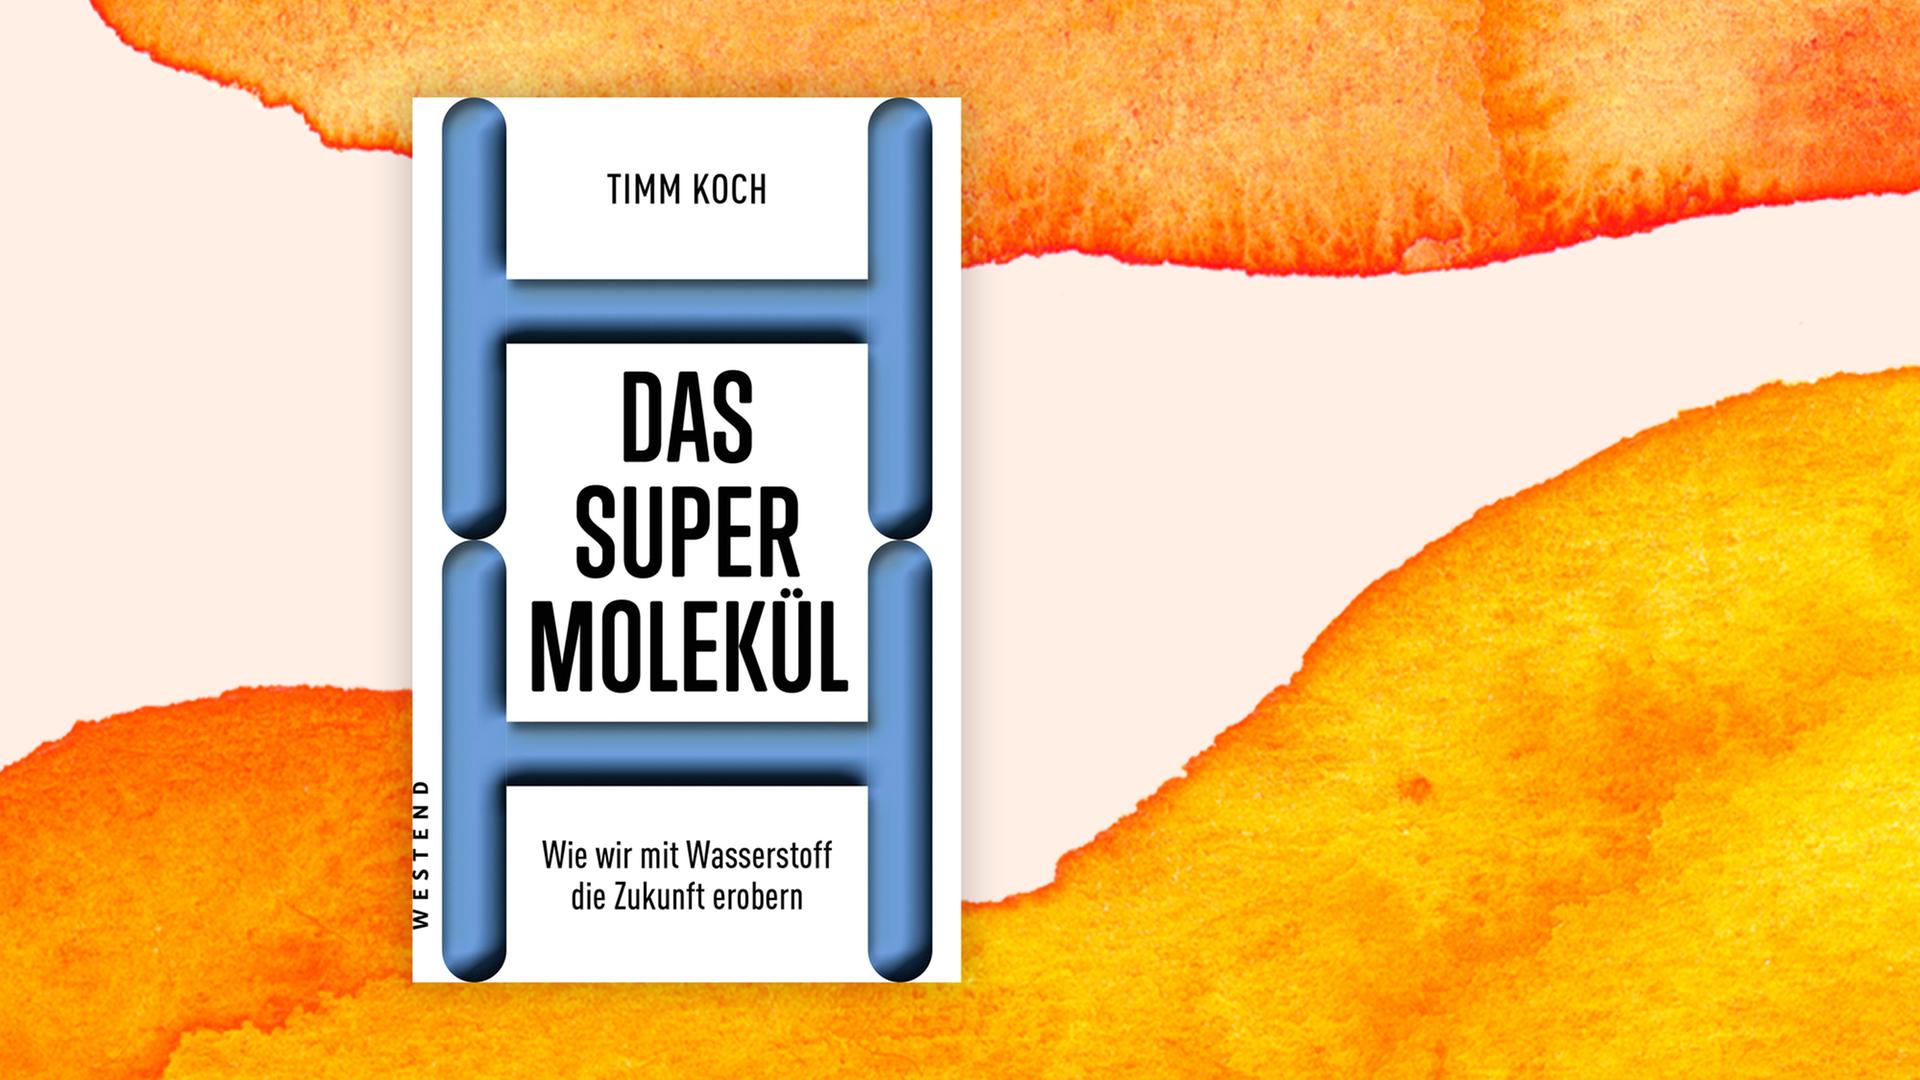 Cover von Timm Kochs Buch "Das Supermolekül".